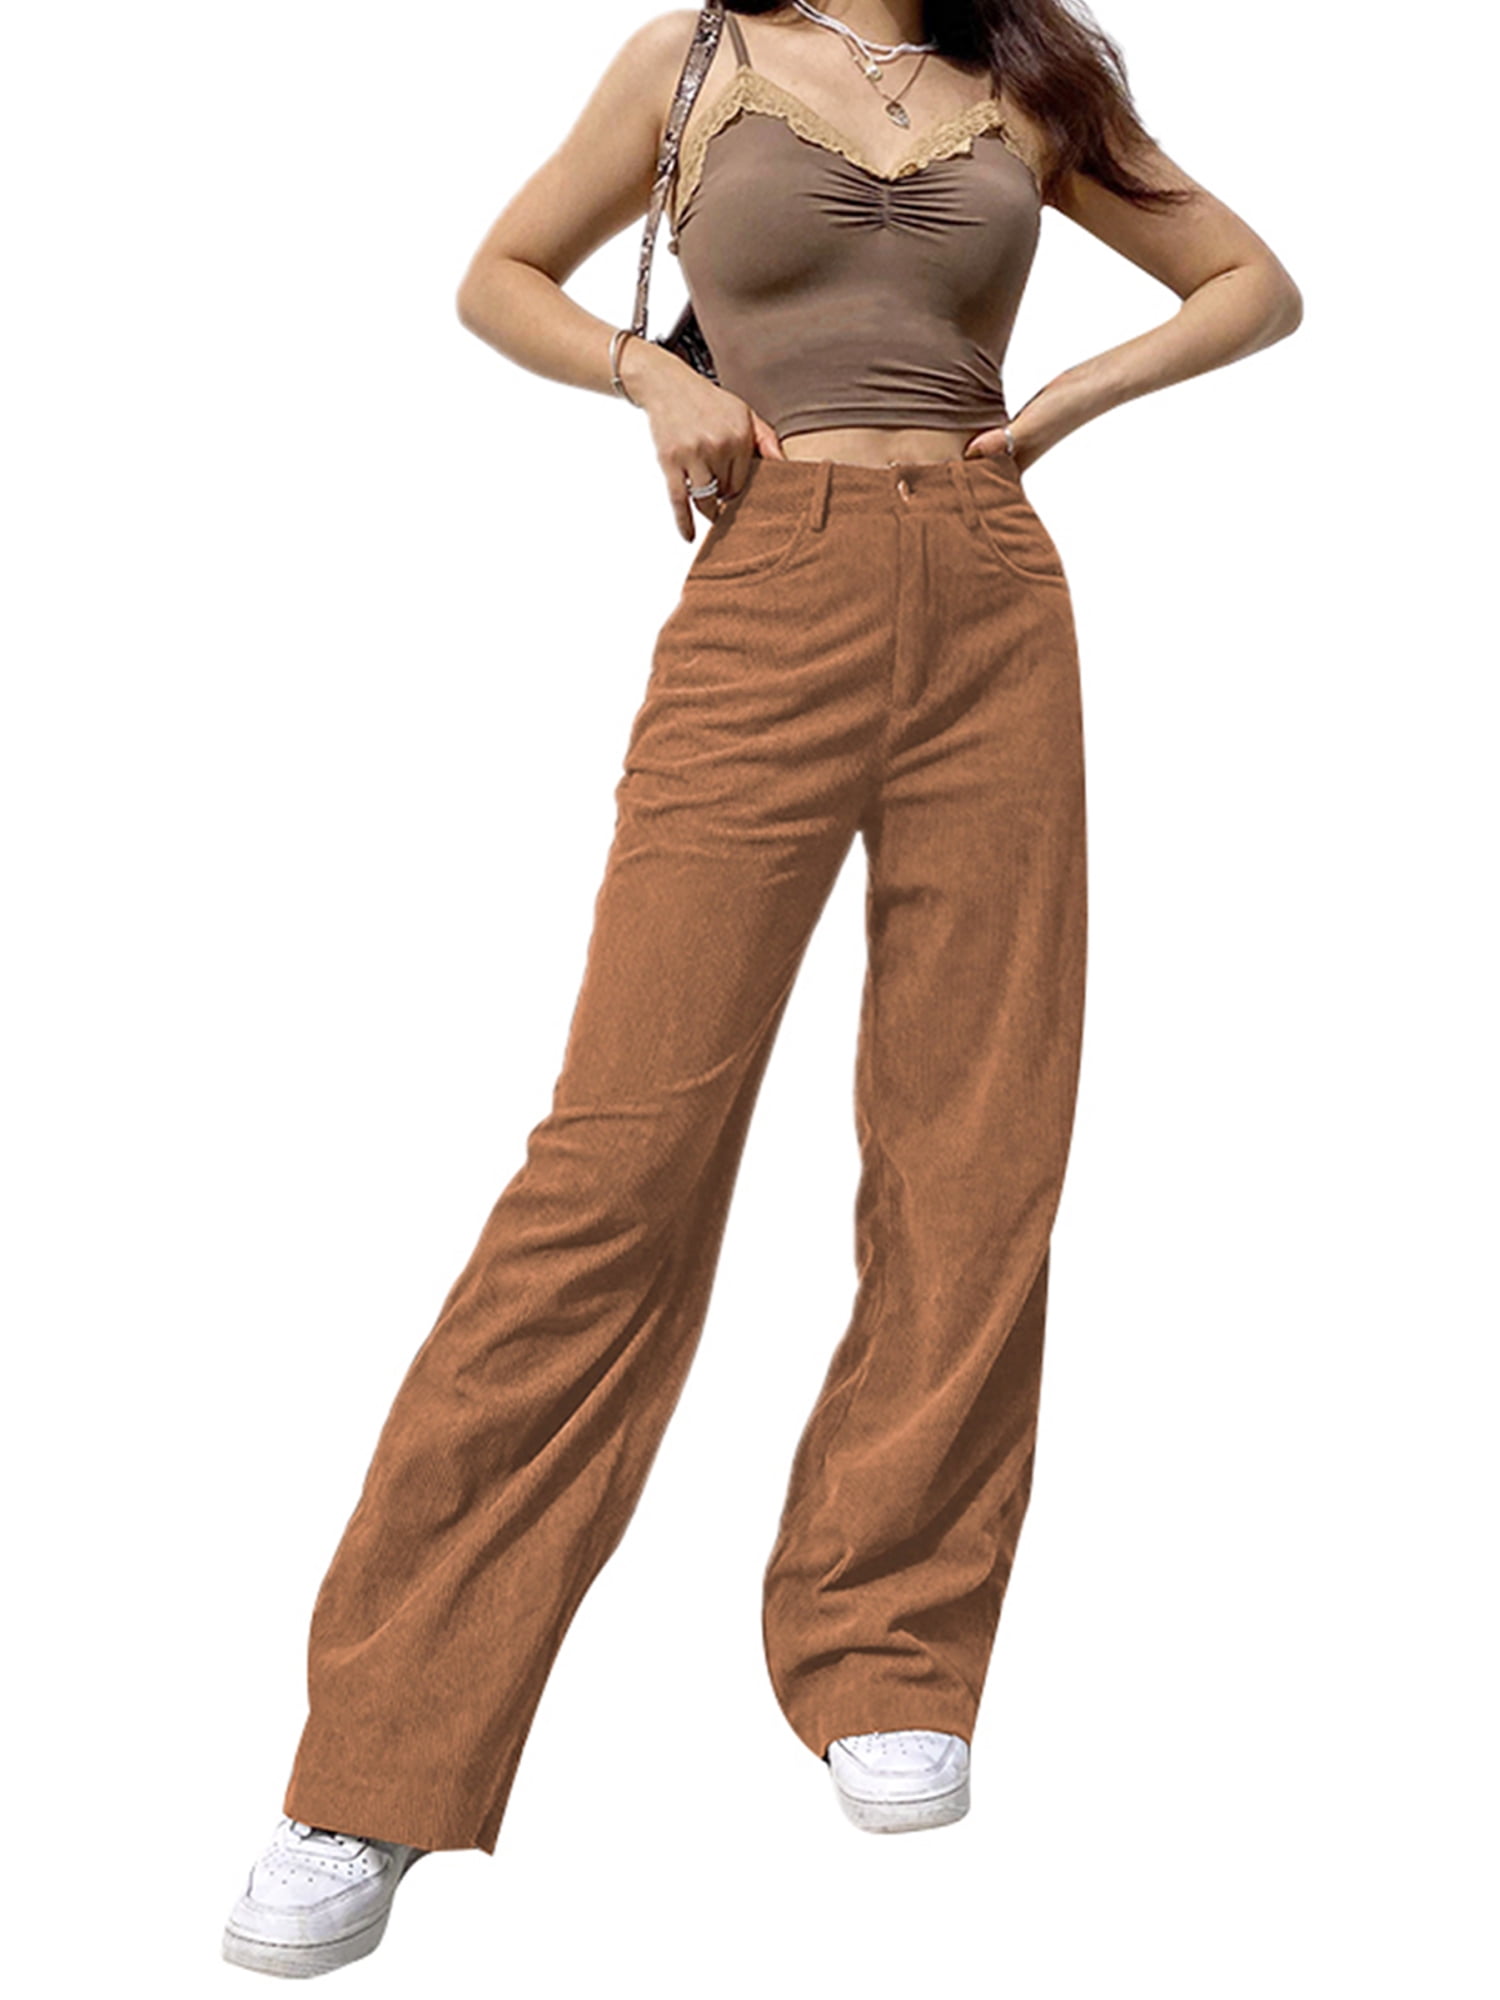 Retro Women's Pants Vintage High Waist Trousers Khaki Pants Vintage Brown Corduroy Pants High waisted Linen Trousers